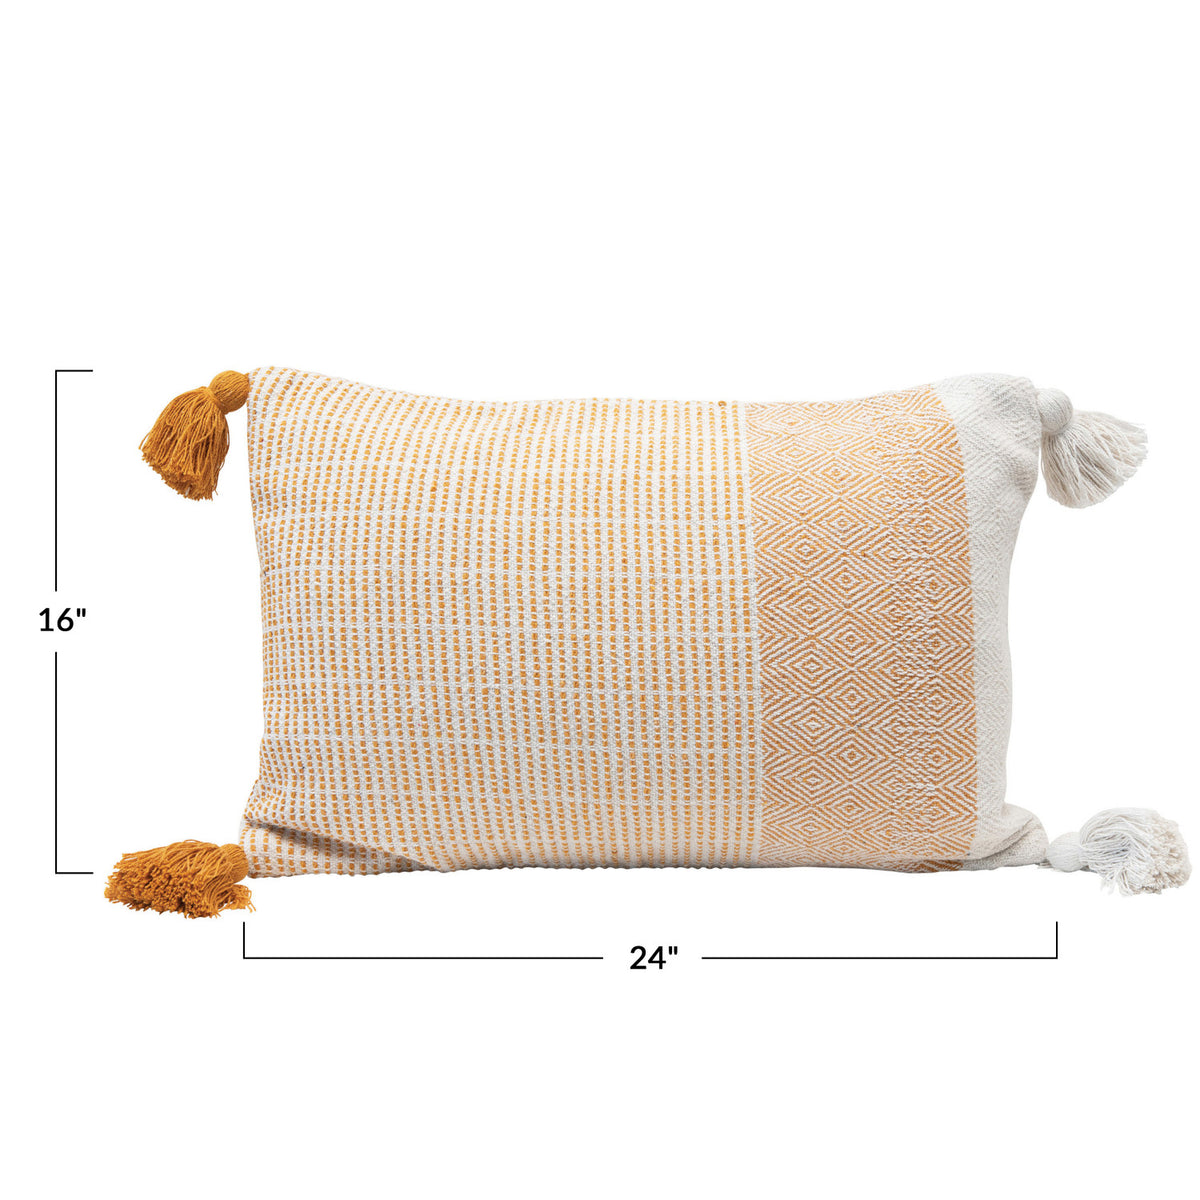 Woven Recycled Cotton Blend Lumbar Pillow w/Tassels